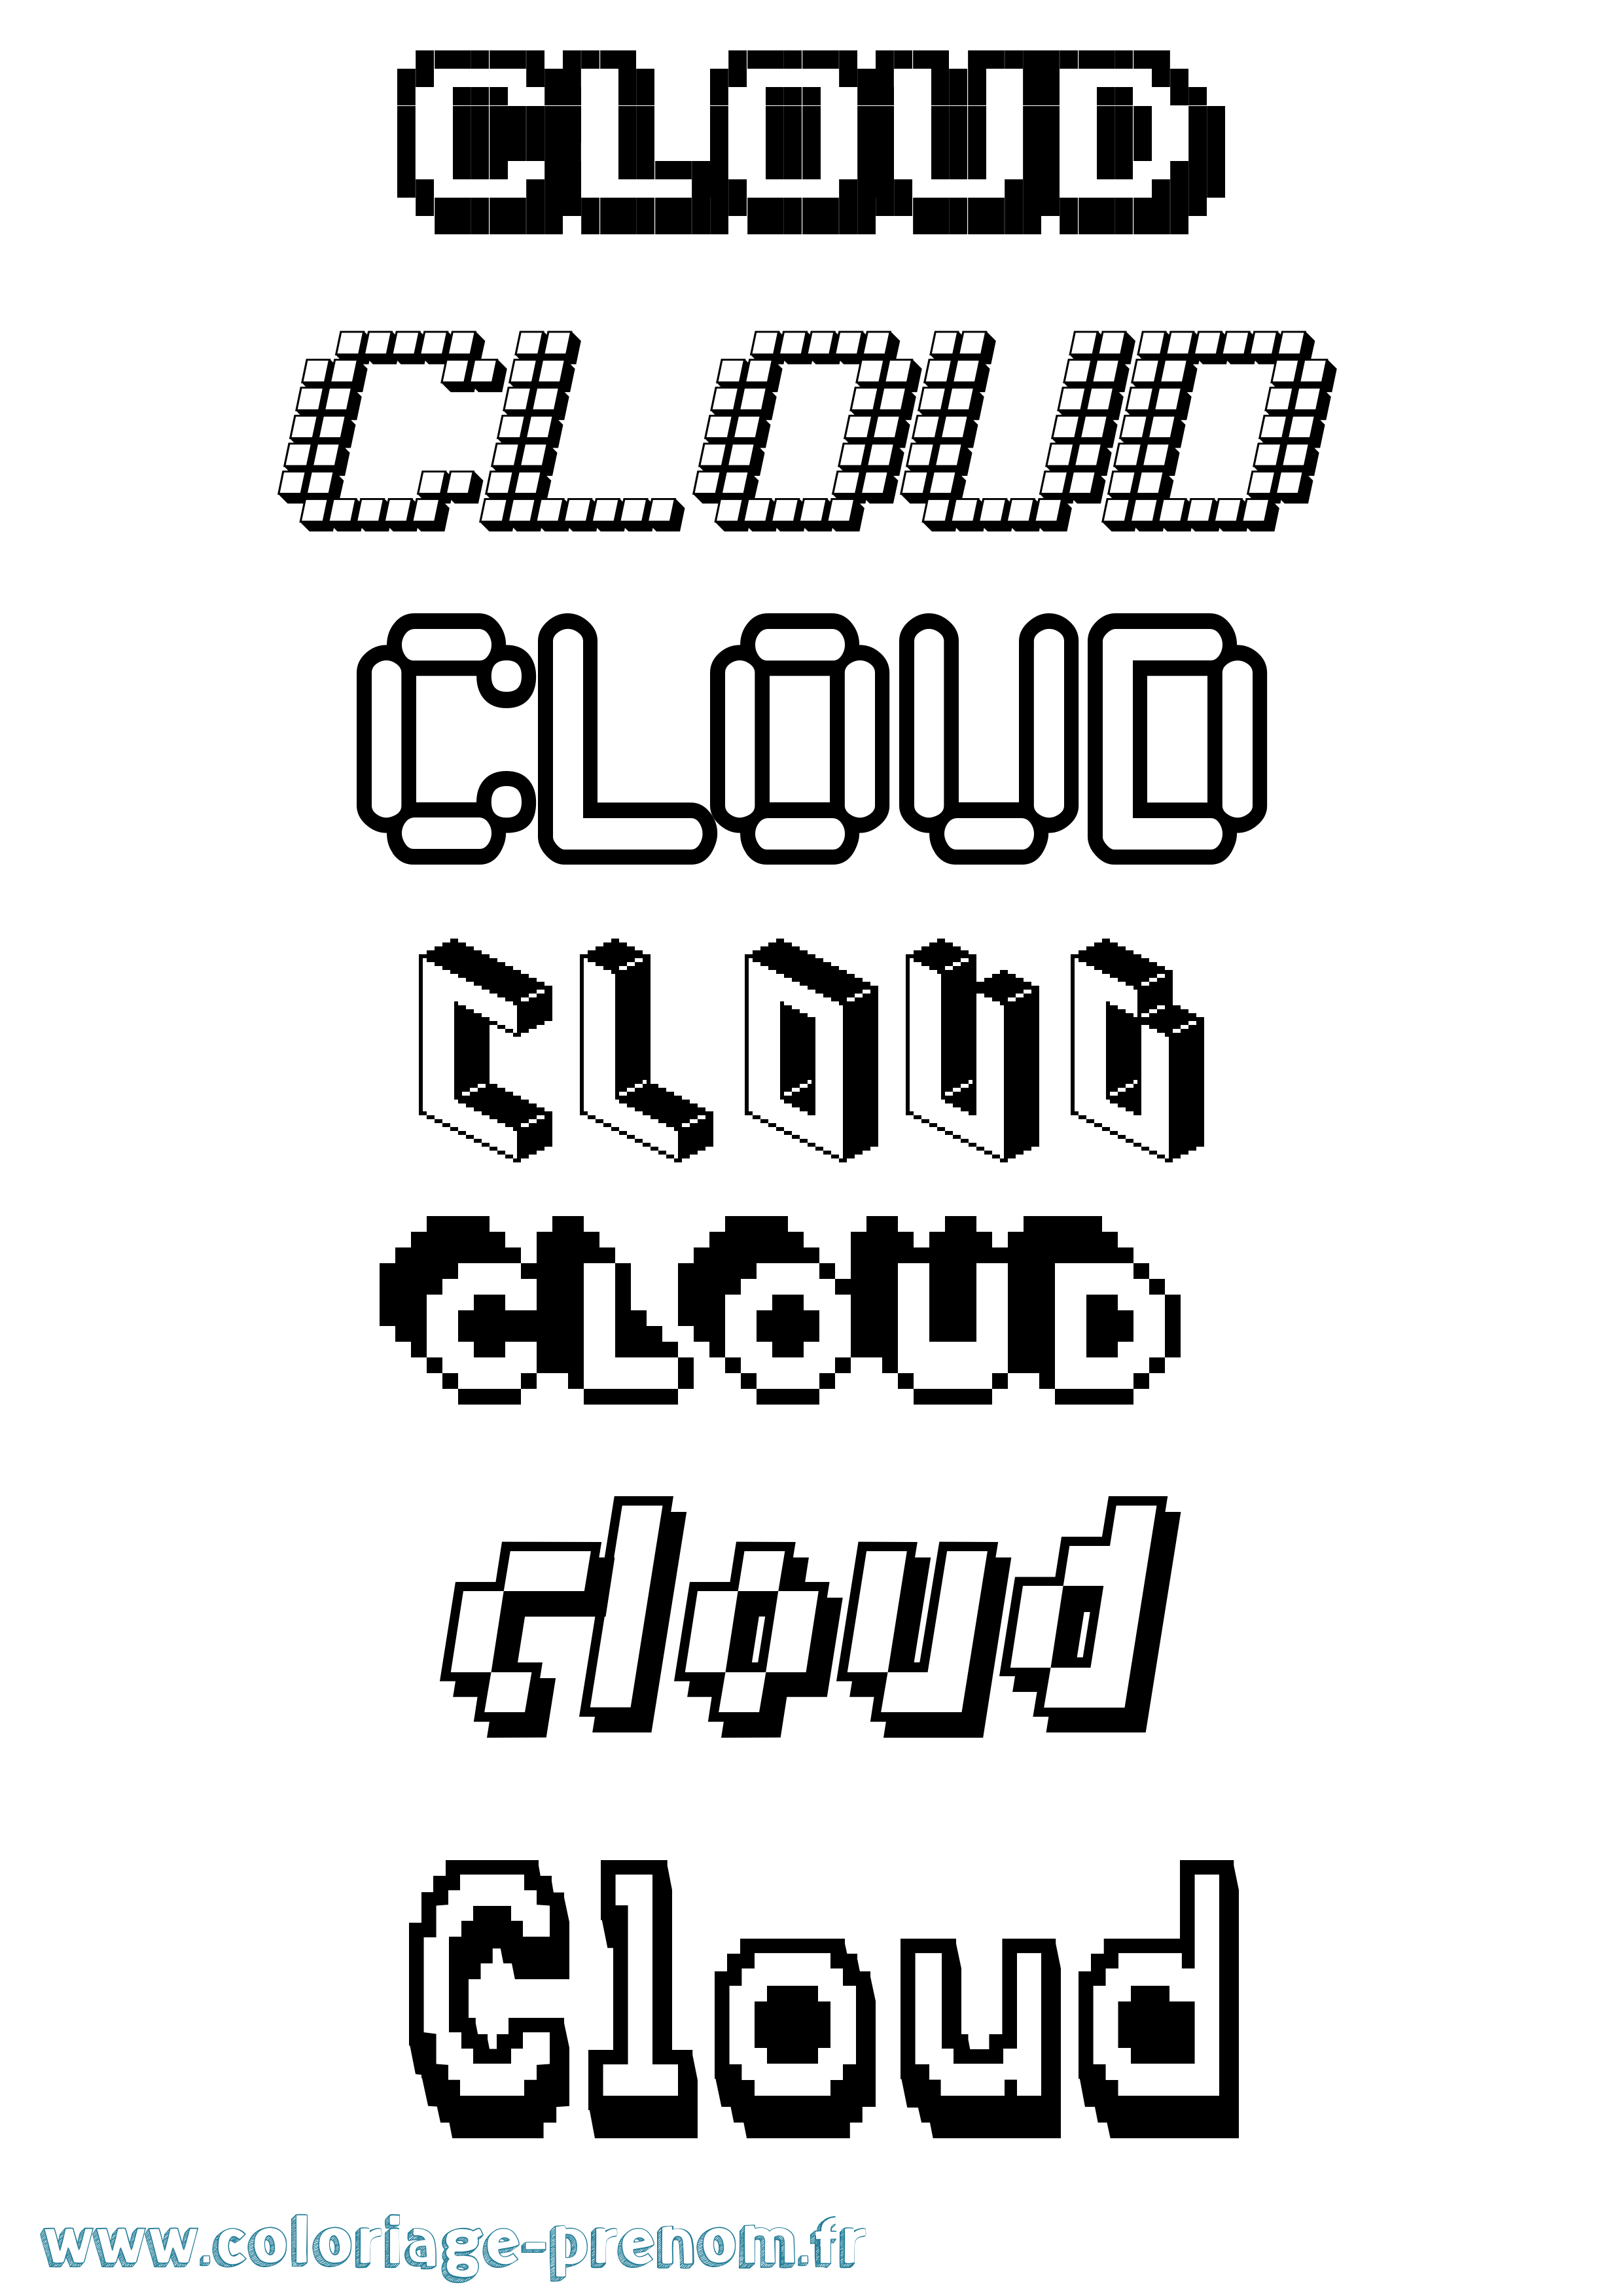 Coloriage prénom Cloud Pixel